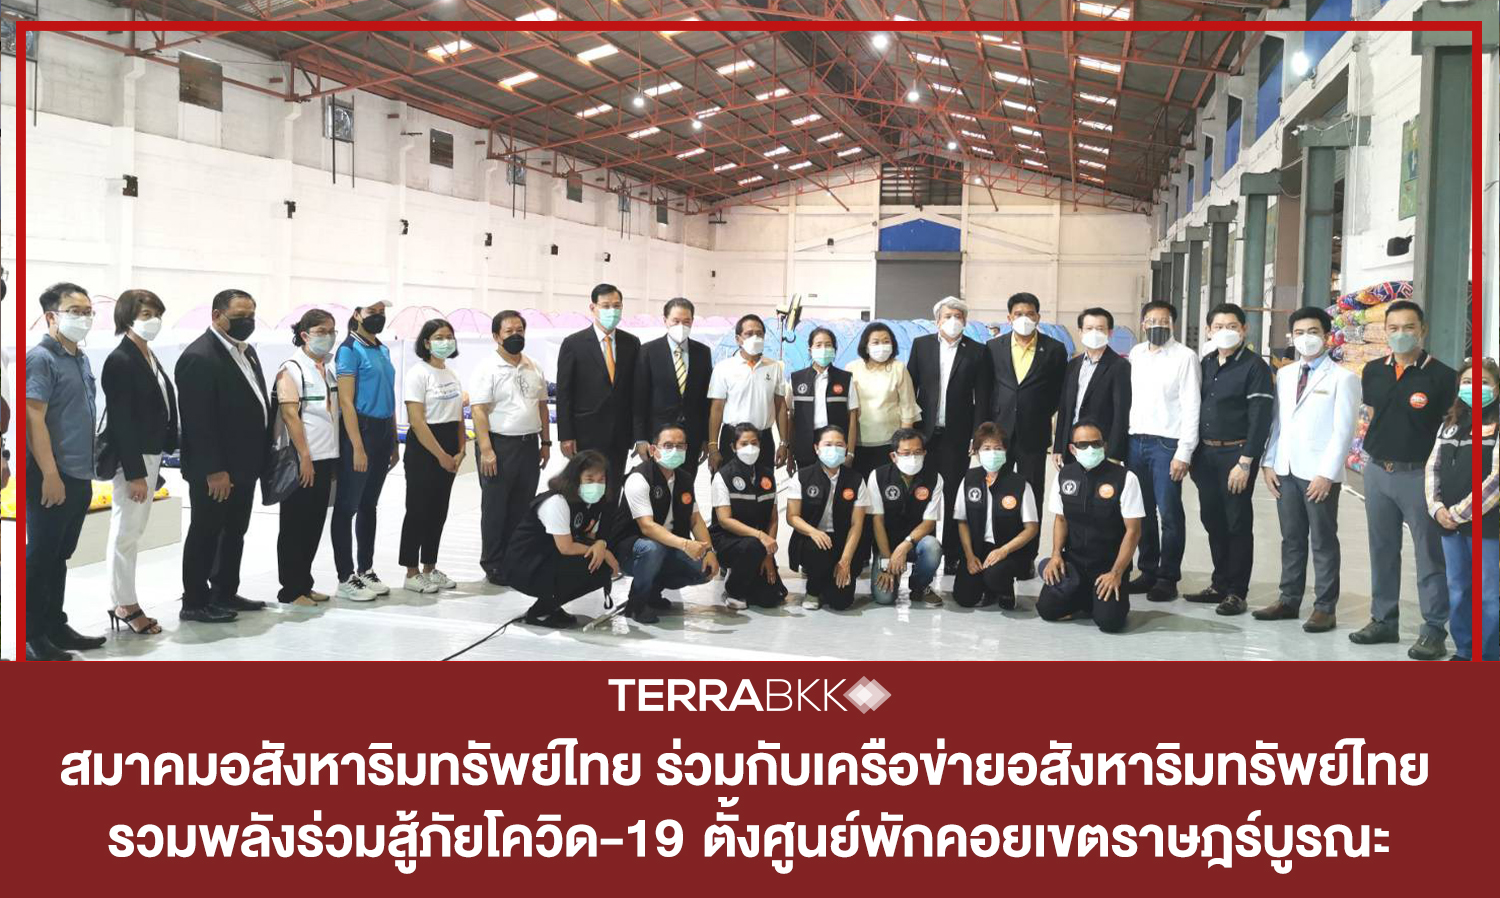 สมาคมอสังหาริมทรัพย์ไทย-ร่วมกับเครือข่ายอสังหาริมทรัพย์ไทย เอกชนจับมือเข้มแข็ง-รวมพลังร่วมสู้ภัยโควิด-19  ตั้งศูนย์พักคอยเขตราษฎร์บูรณะ